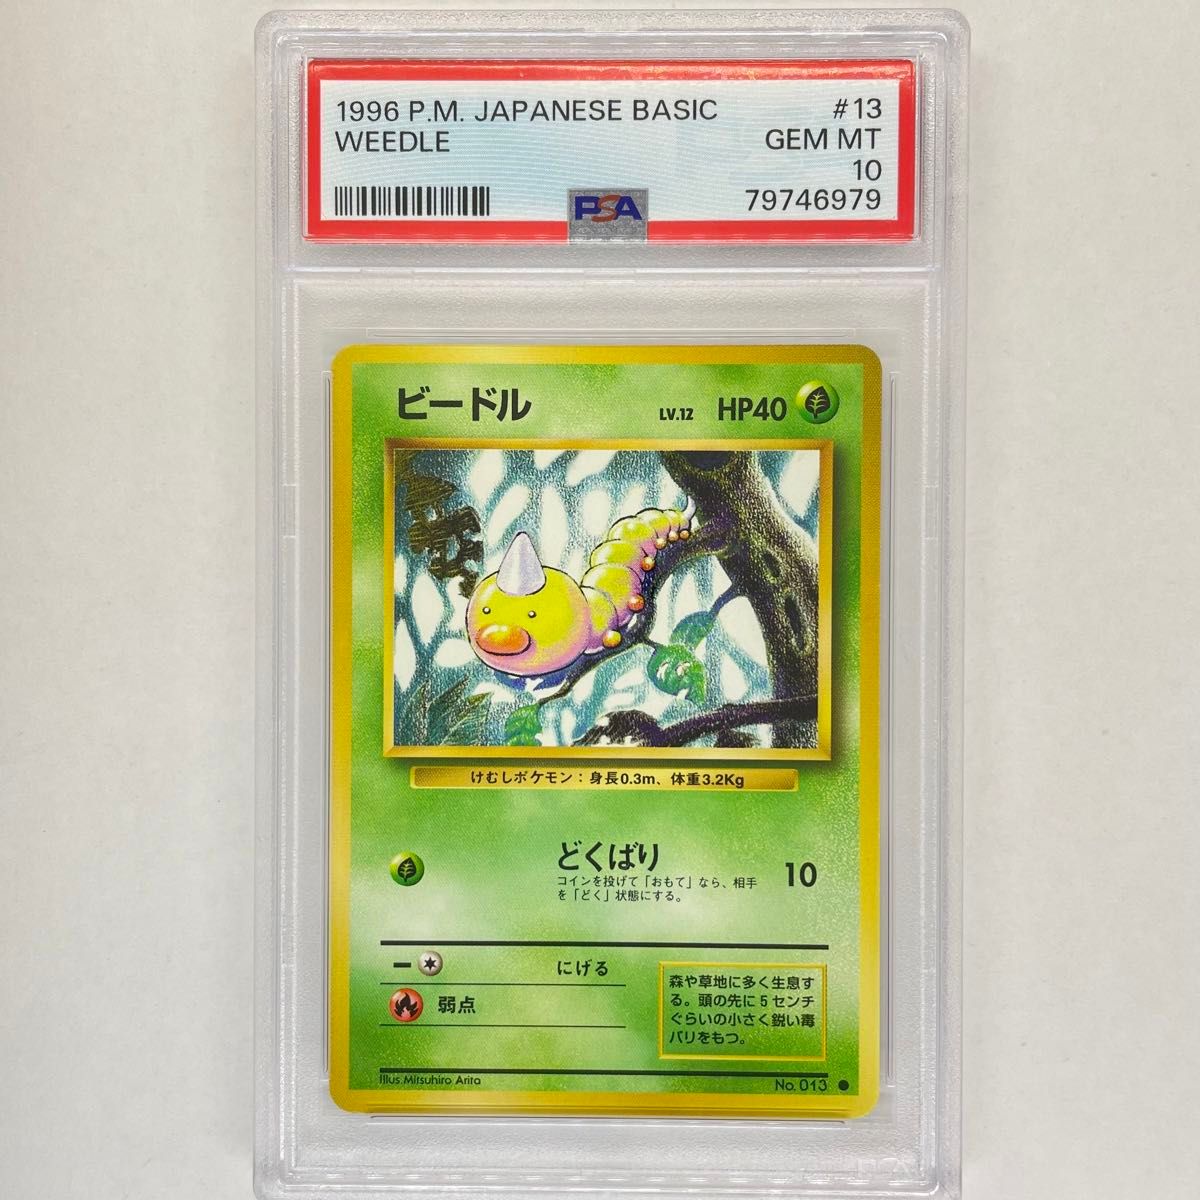 ビードル 旧裏 PSA10 ポケモンカード 旧裏面 鑑定品 1996 pokemon card Japanese